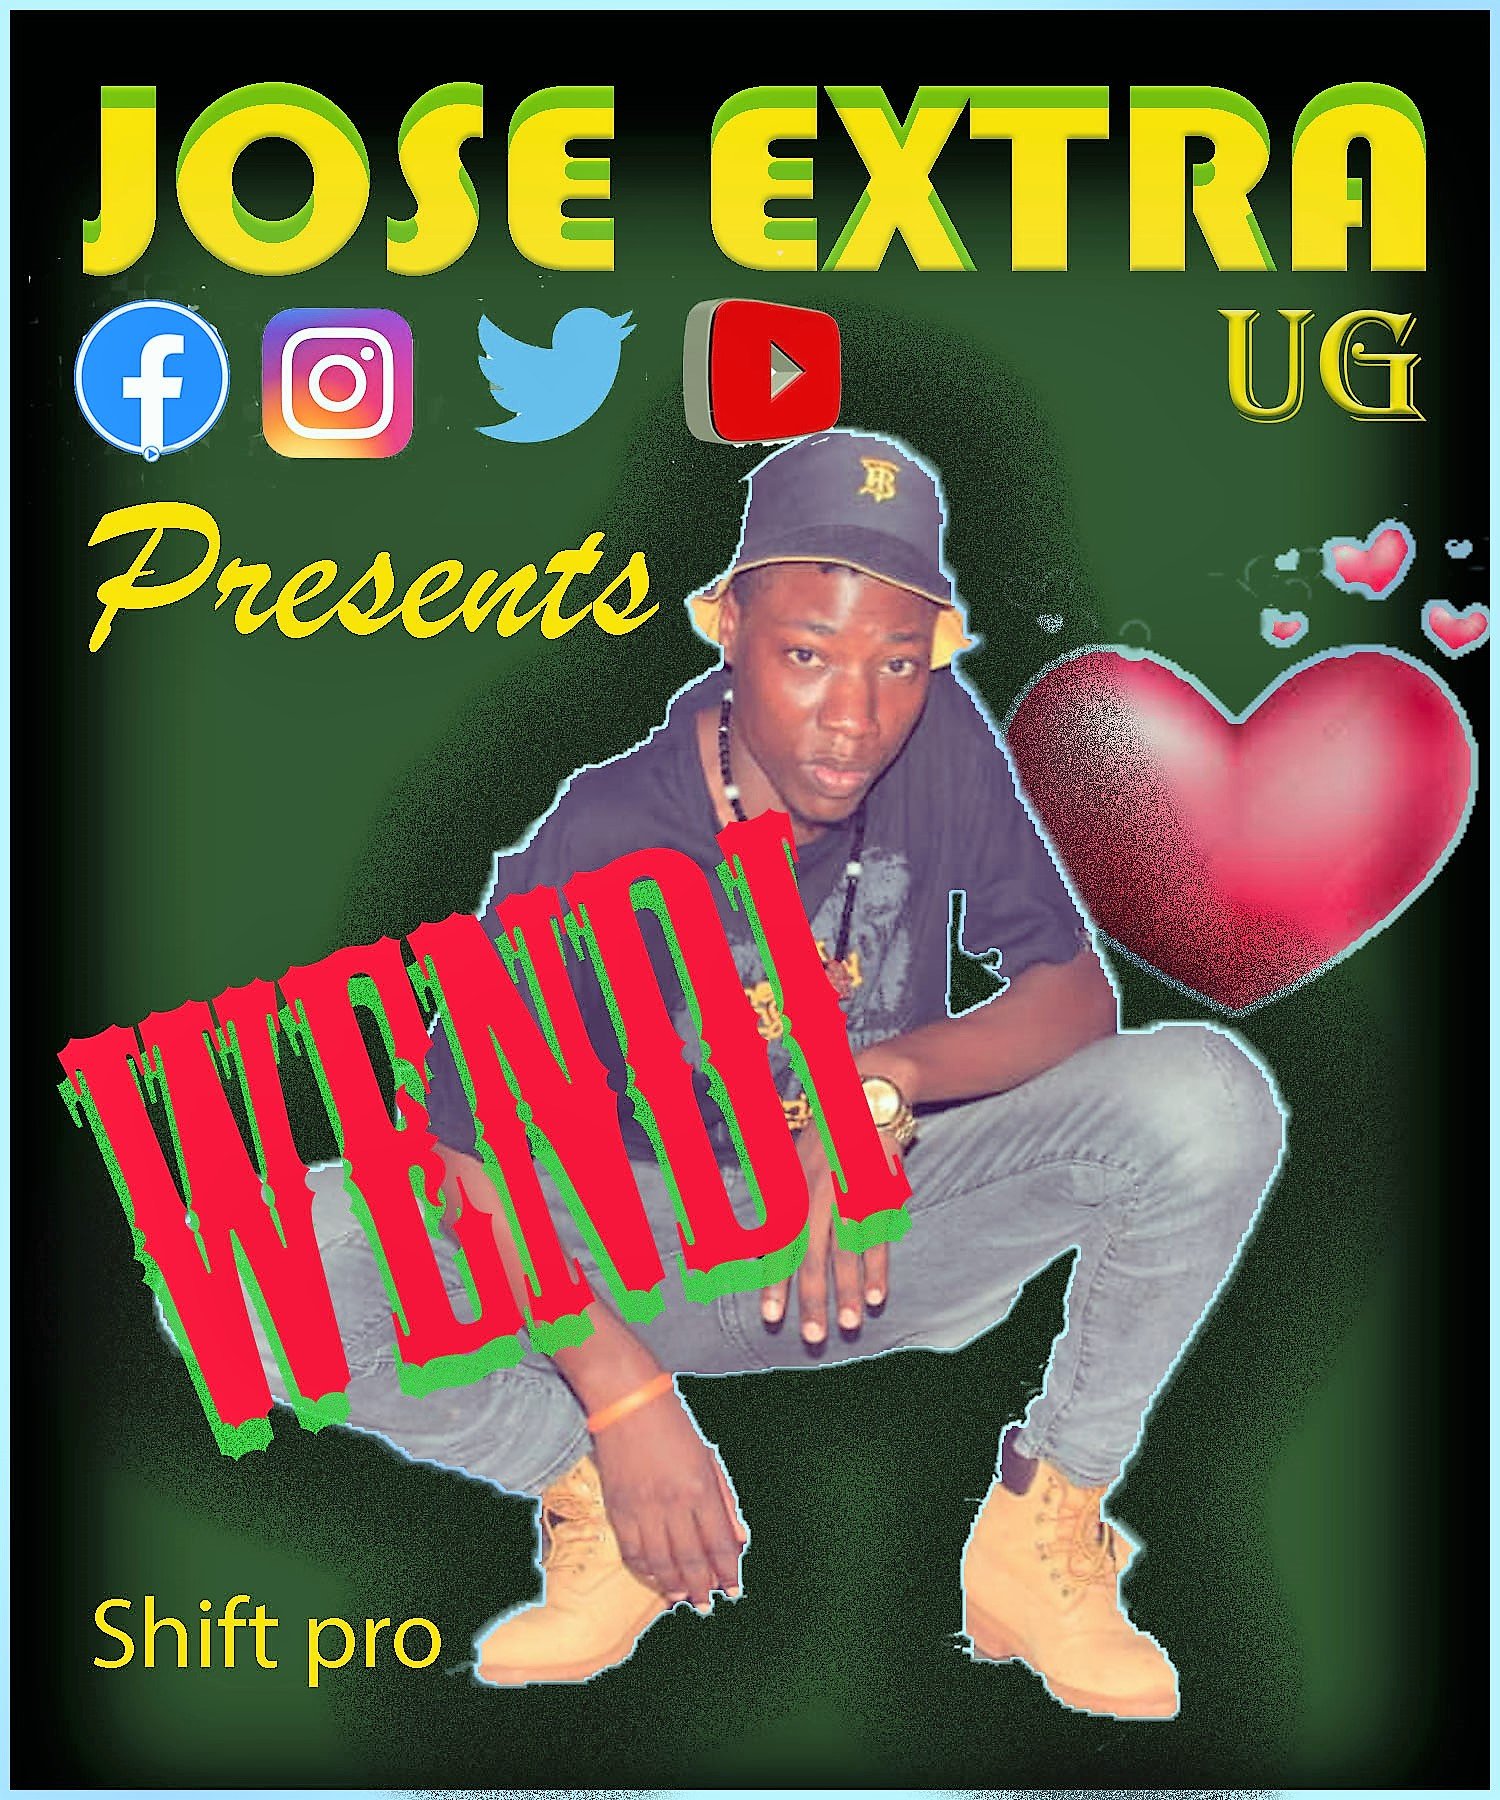 Jose Extra Ug